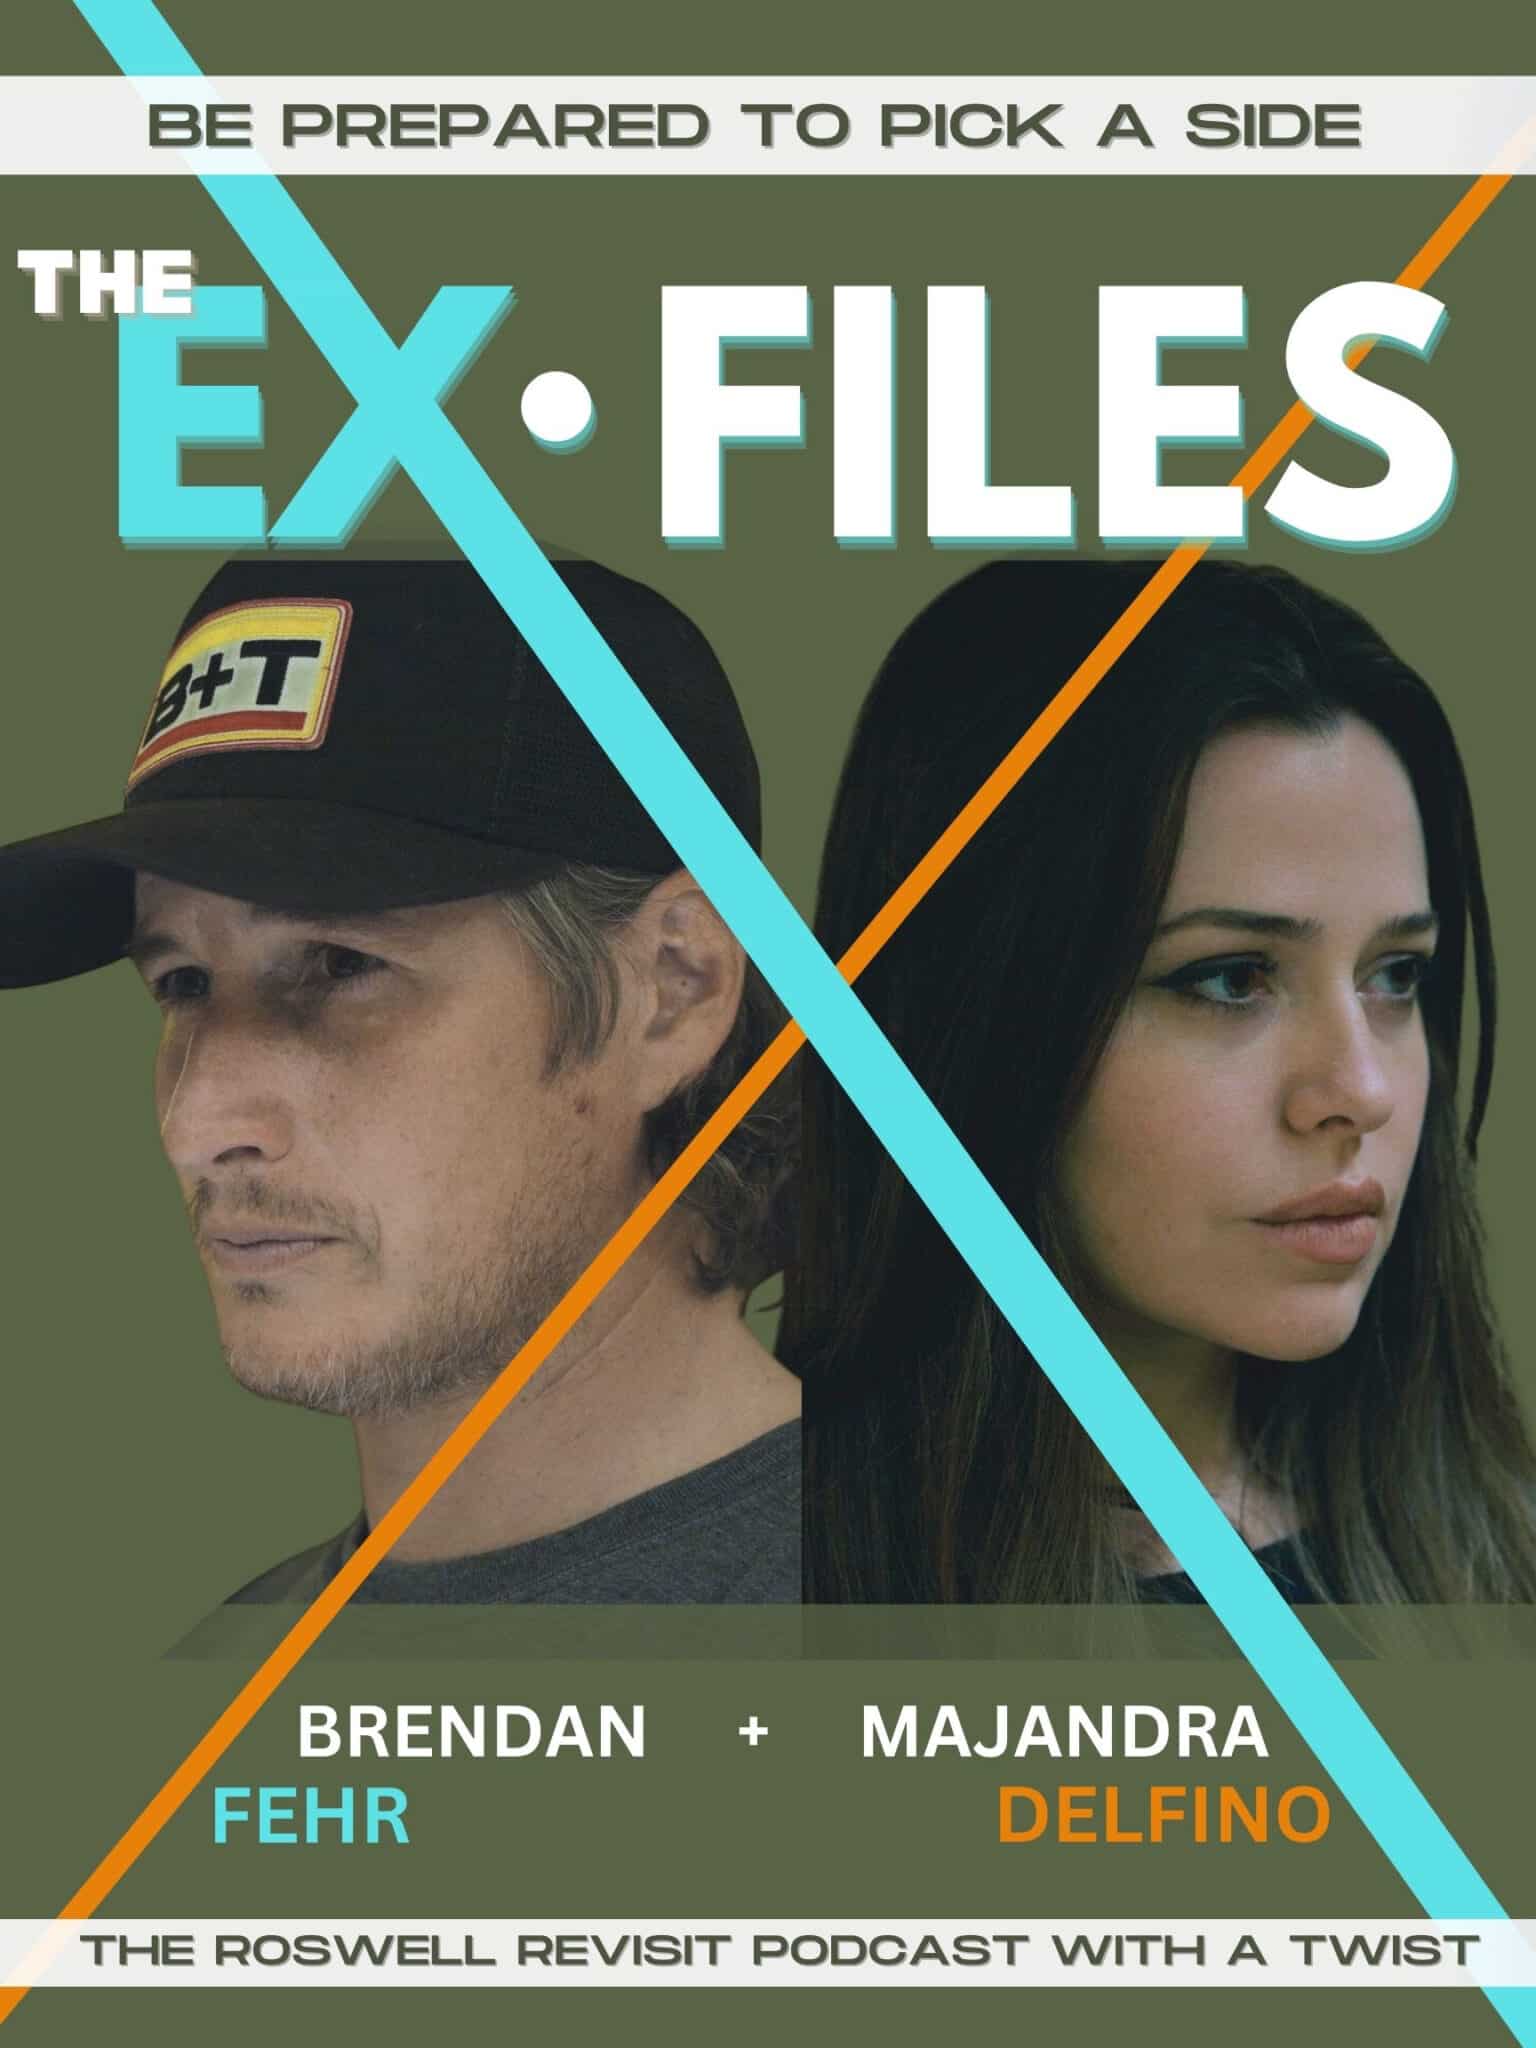 Brendan Fehr et Majandra Delfino figurent côte à côte sur l'affiche du podcast.